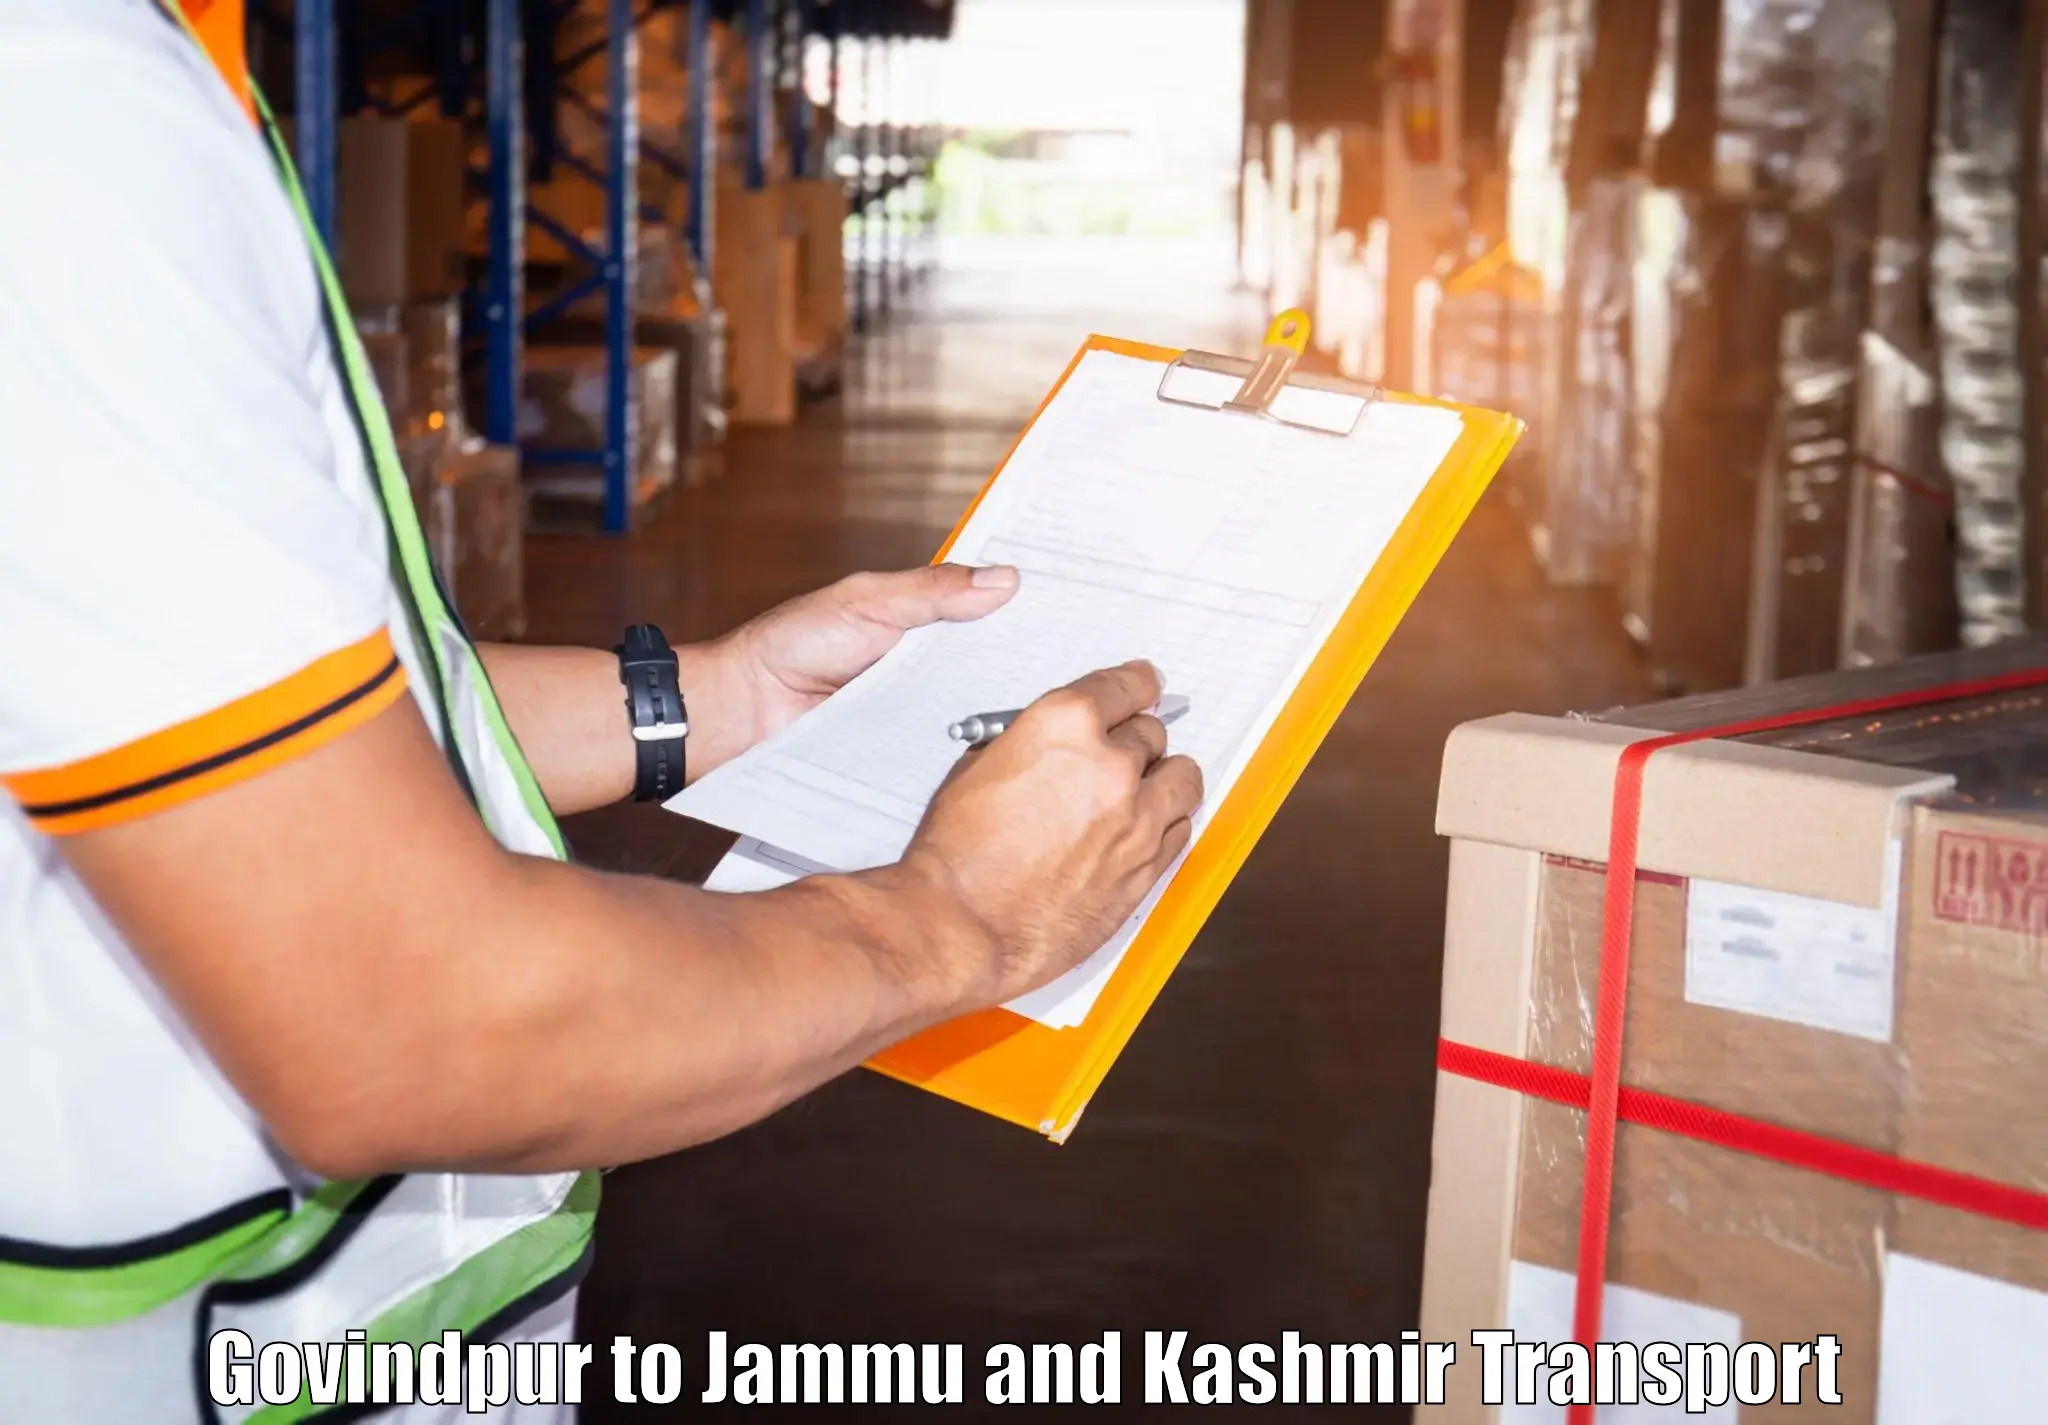 Furniture transport service Govindpur to Jammu and Kashmir